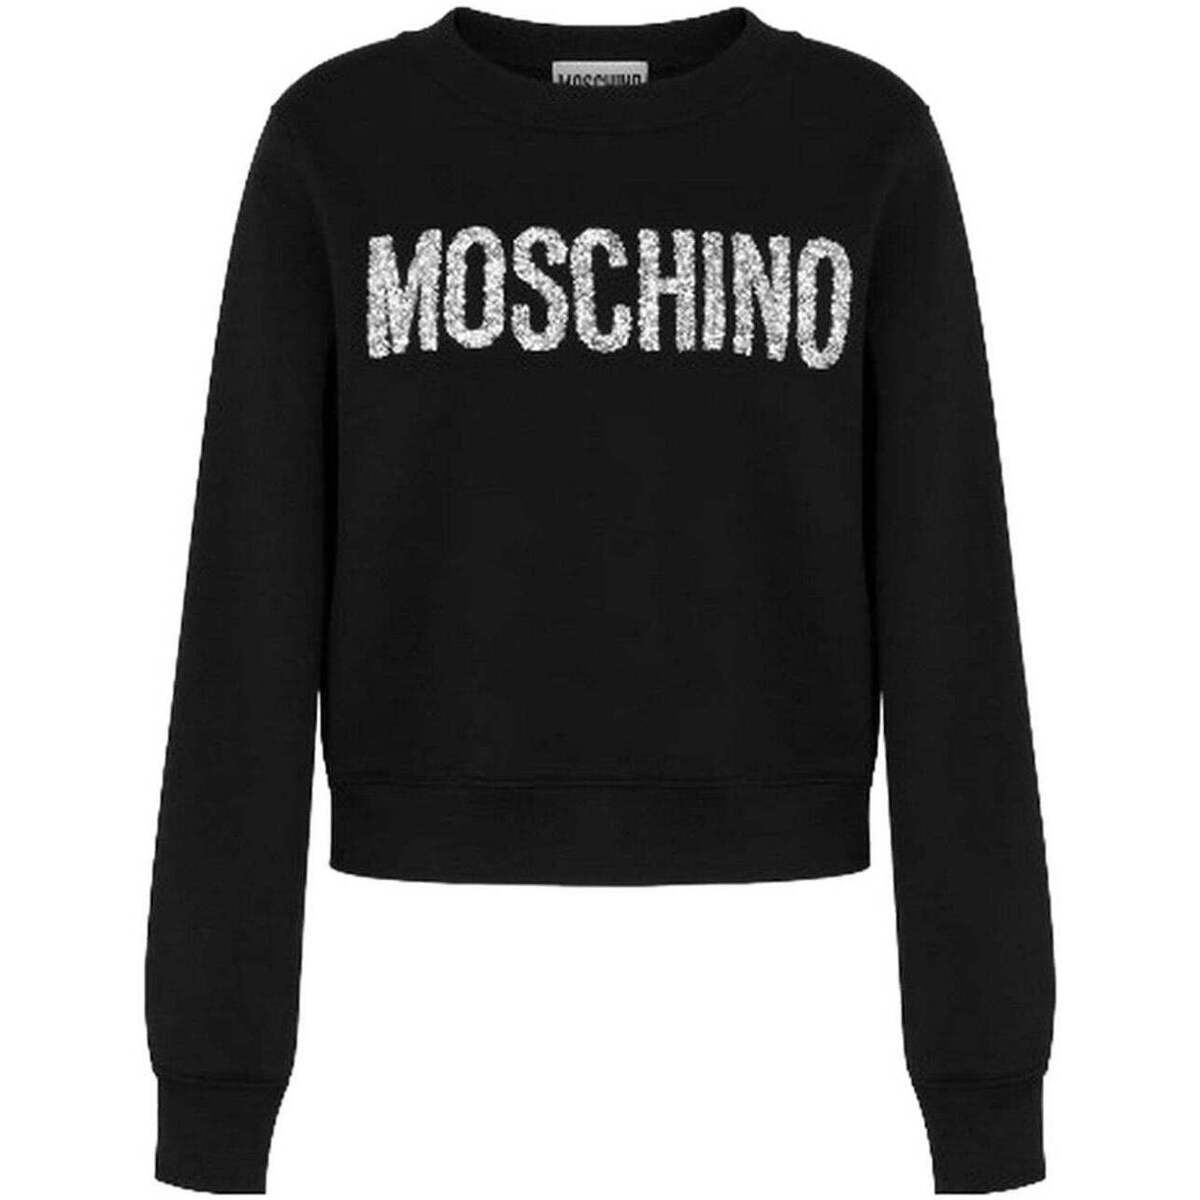 Vêtements Femme Sweats Moschino  Noir